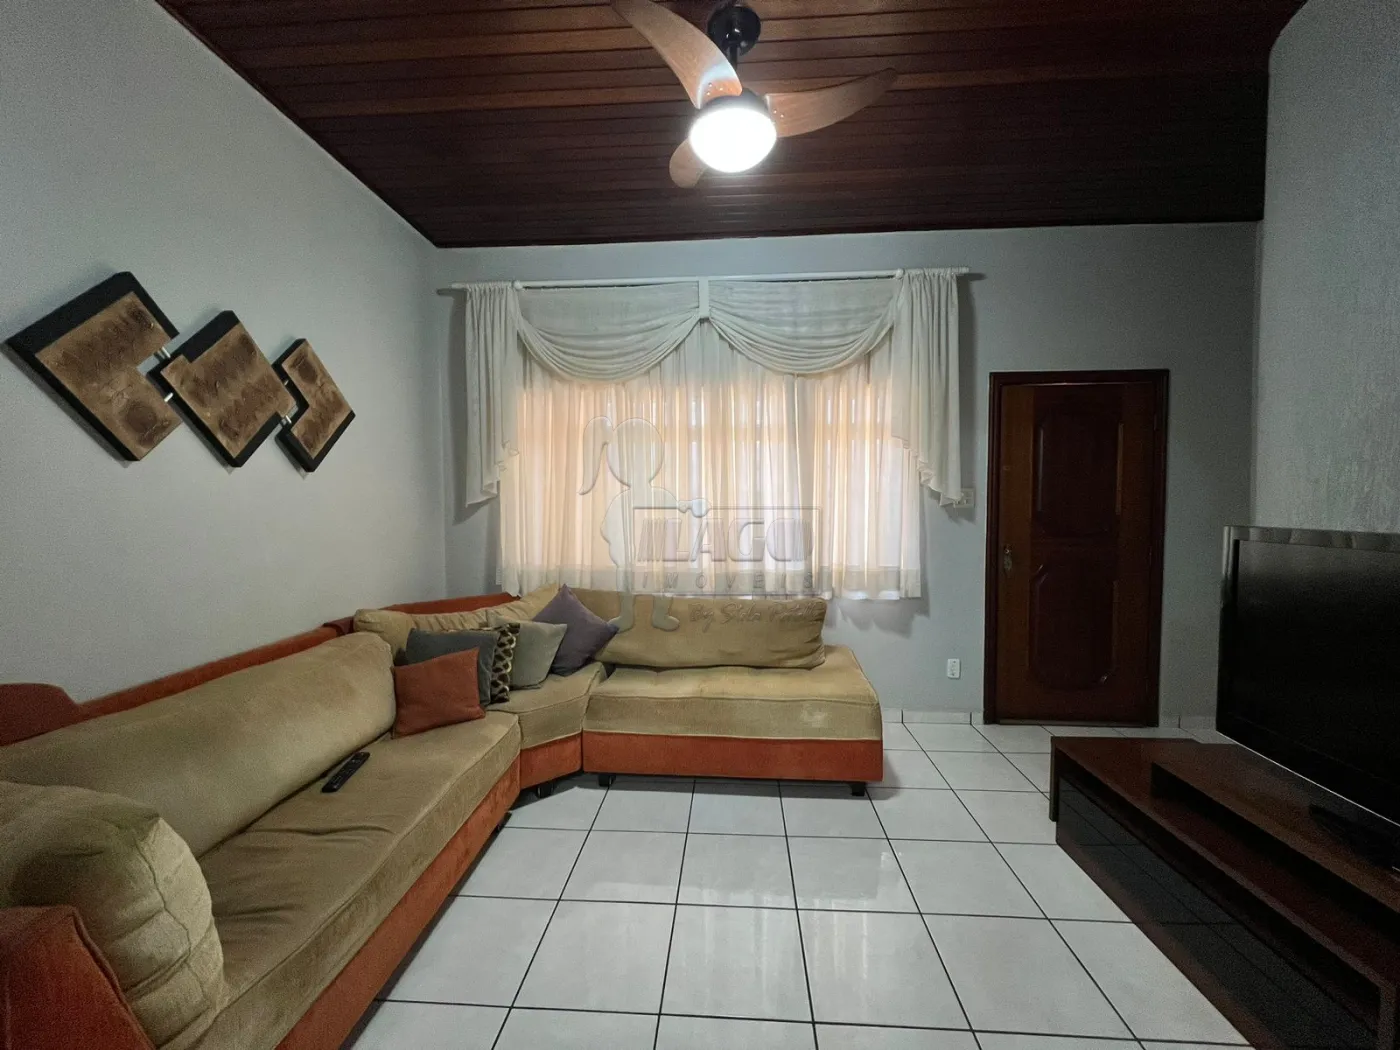 Comprar Casas / Padrão em Ribeirão Preto R$ 480.000,00 - Foto 2